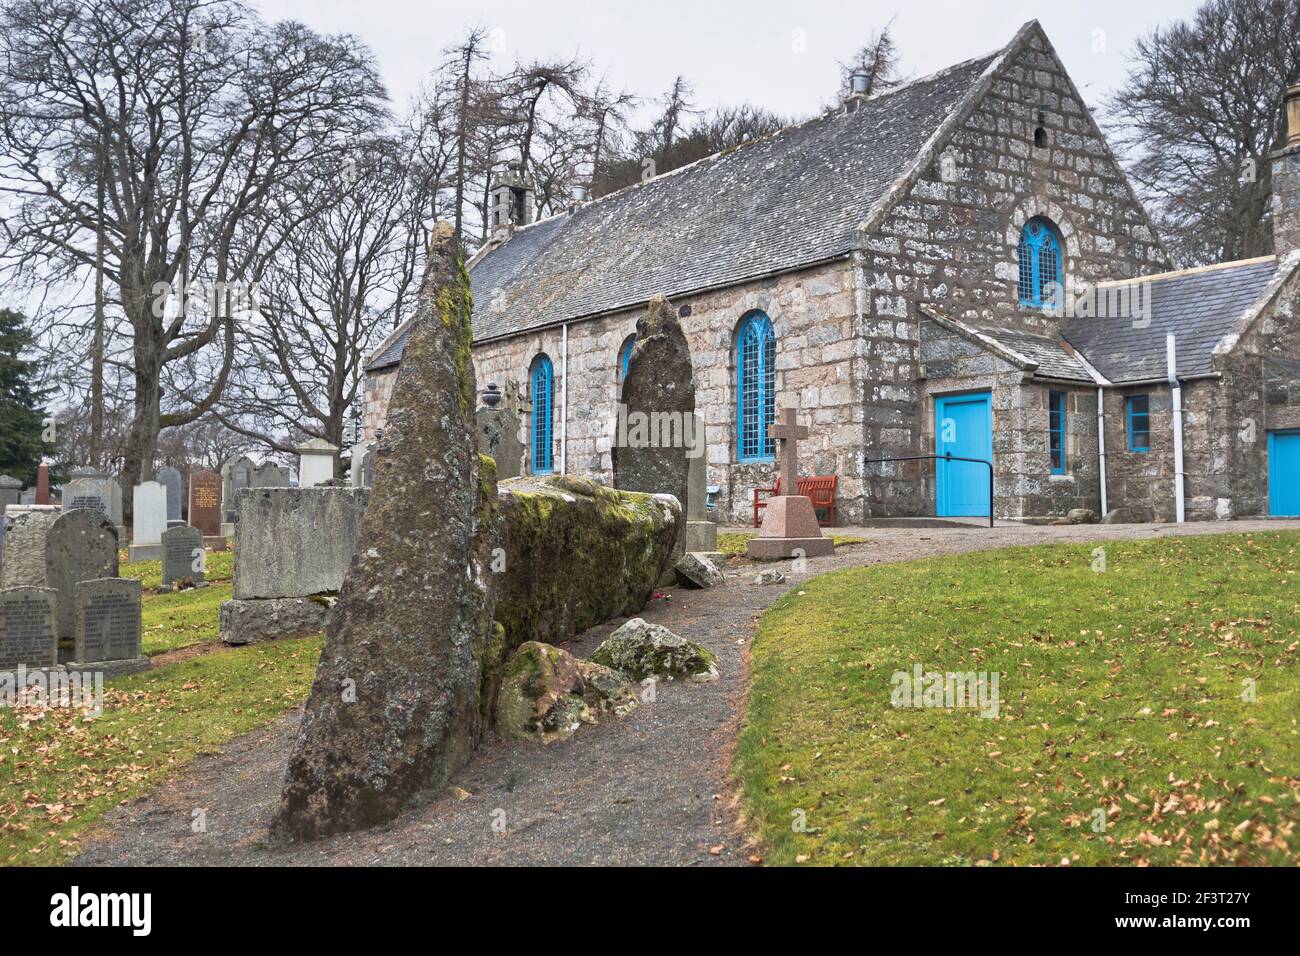 dh ECHT ET MIDMAR KIRK ABERDEENSHIRE Church of Scotland rural Églises écossaises dans le cimetière avec l'âge de bronze Décumbent Stone Circle pierres de flanker Banque D'Images